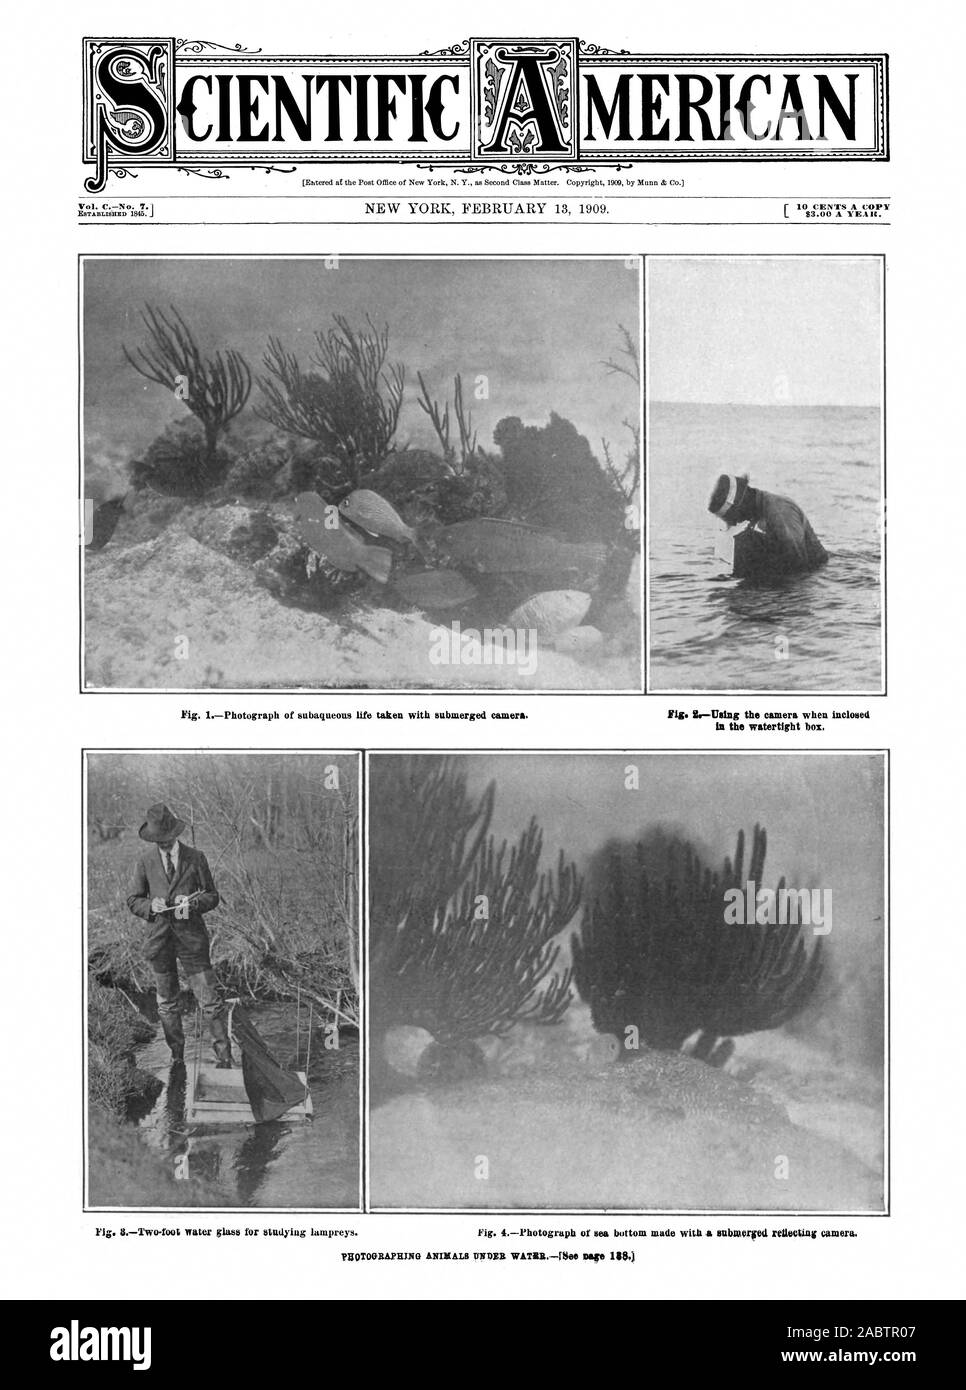 MERICAN SCIENTIFICA Vol. CNo. 7.1 83.00 l'anno. Nella scatola stagna. Pg()TOORAFEING ANIMALI IINANB WAIIRRFbee pagina 3.), Scientific American, -1909-02-13 Foto Stock